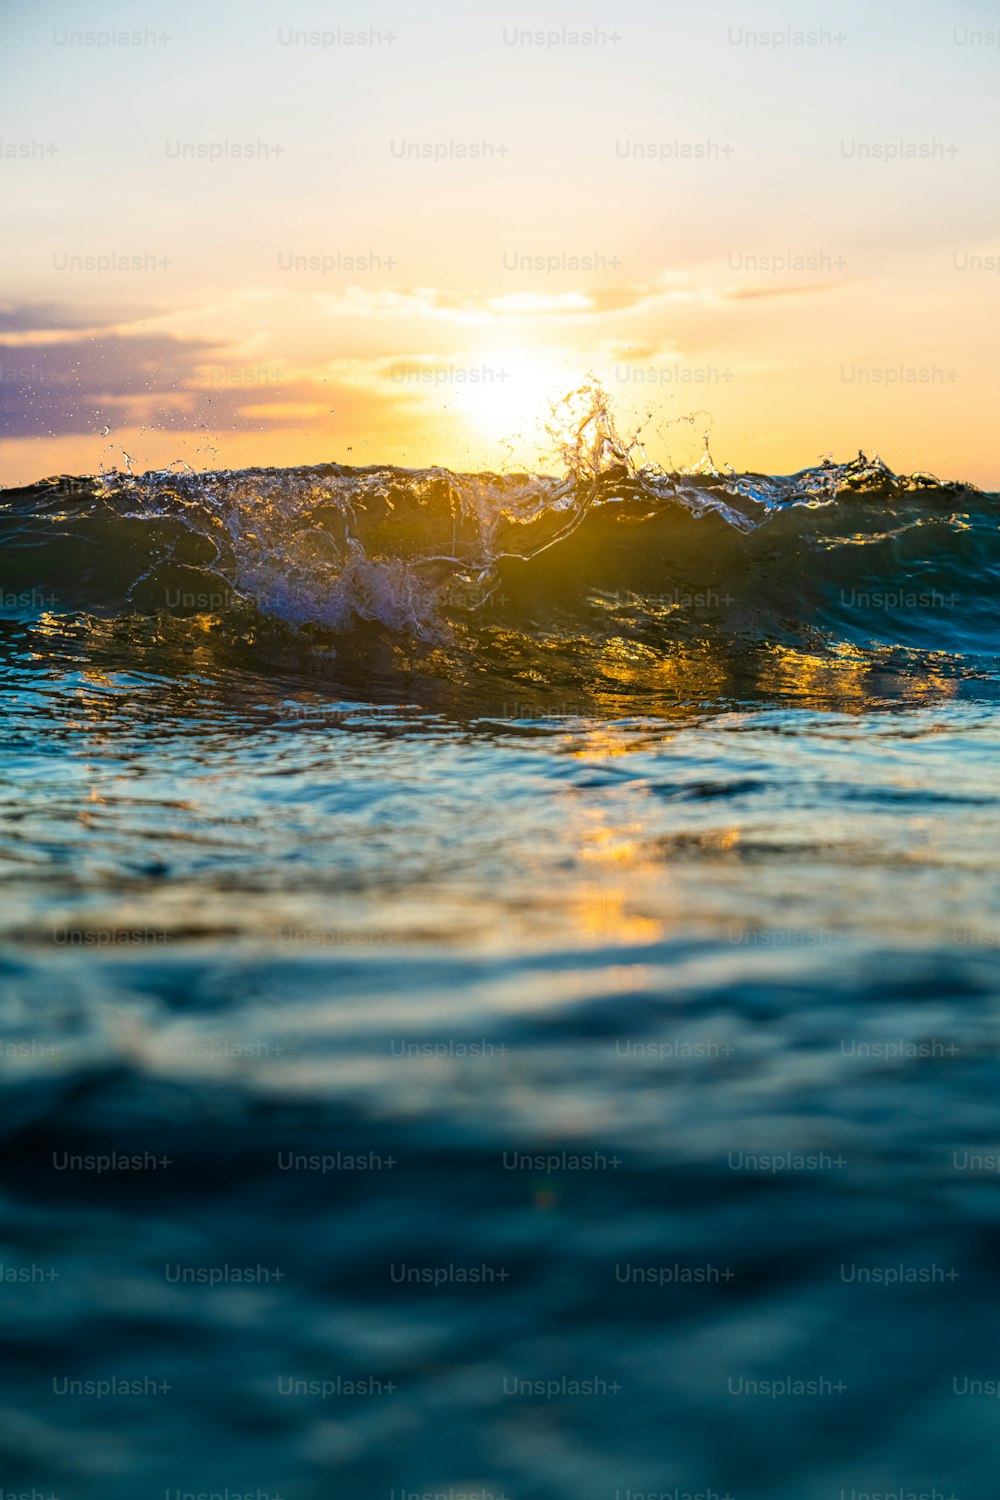 Il sole sta tramontando sulle onde dell'oceano